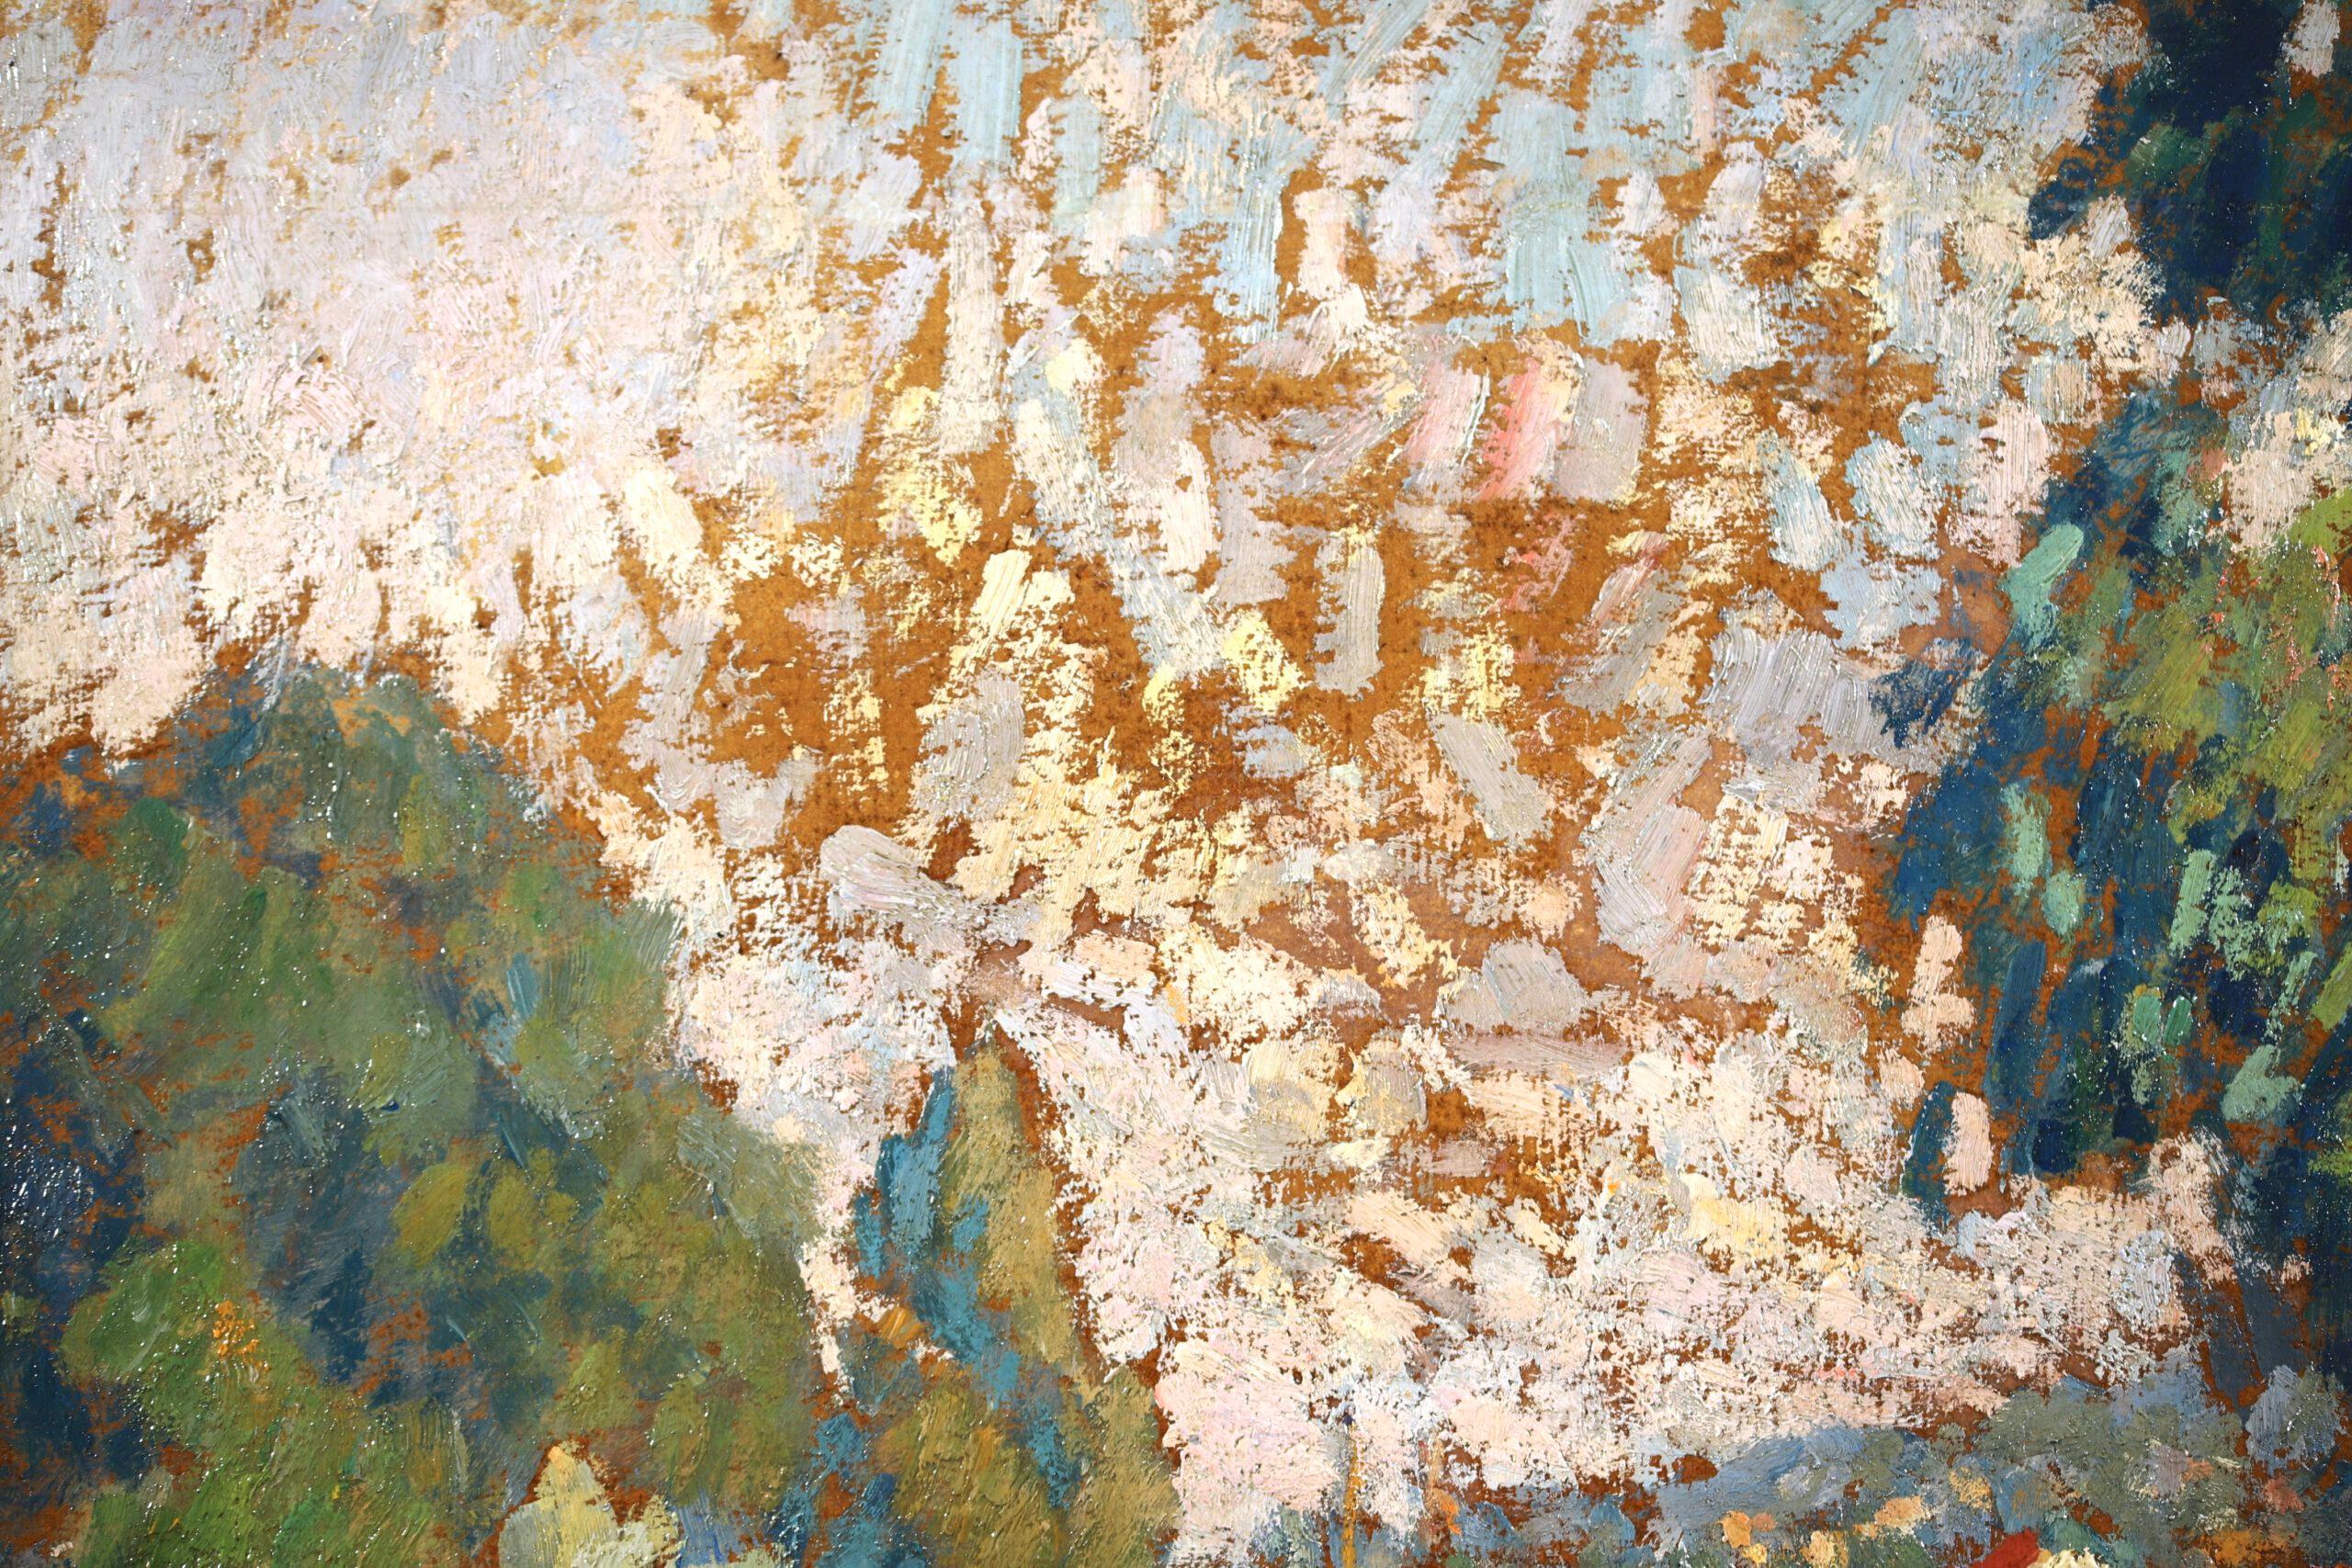 Signierte divisionistische Öl auf Künstlerplatte Landschaft von Französisch Maler Joseph Louis Francois Lepine. Das Gemälde zeigt einen Blick auf die Seine an einem strahlenden Sommertag. Ein Boot segelt auf dem Wasser, grüne Bäume säumen die Ufer